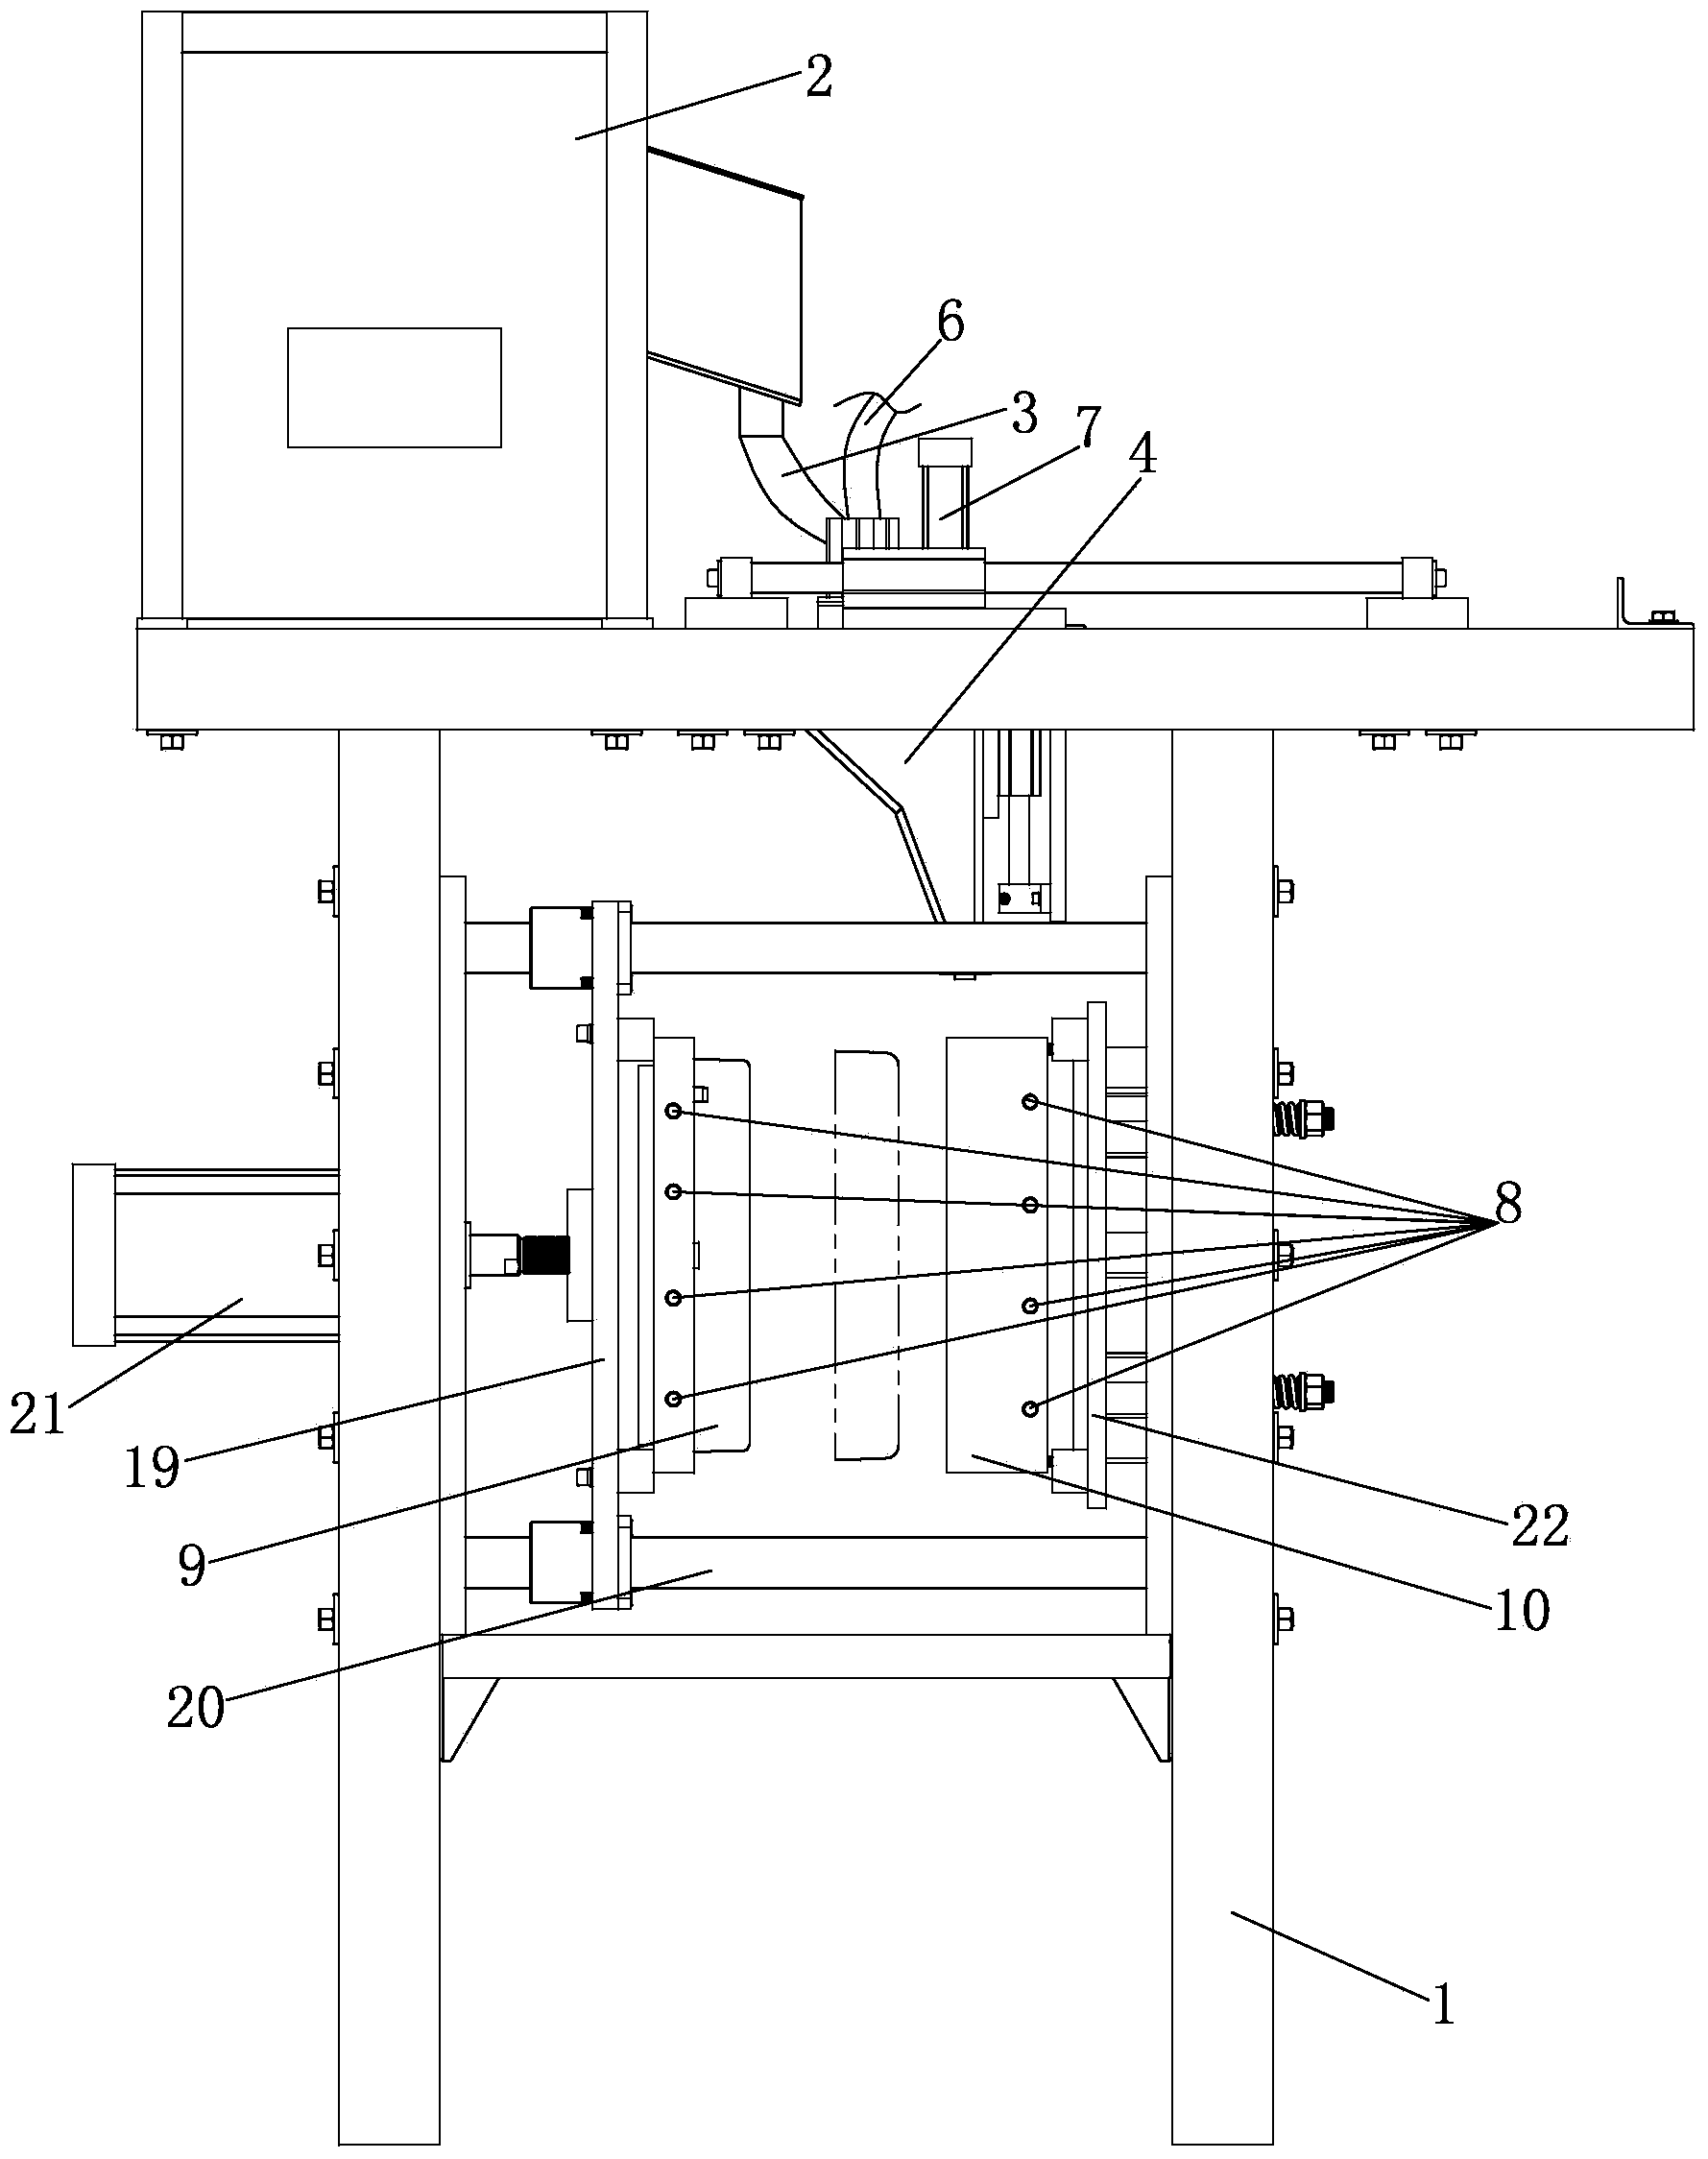 Casting method for flywheel